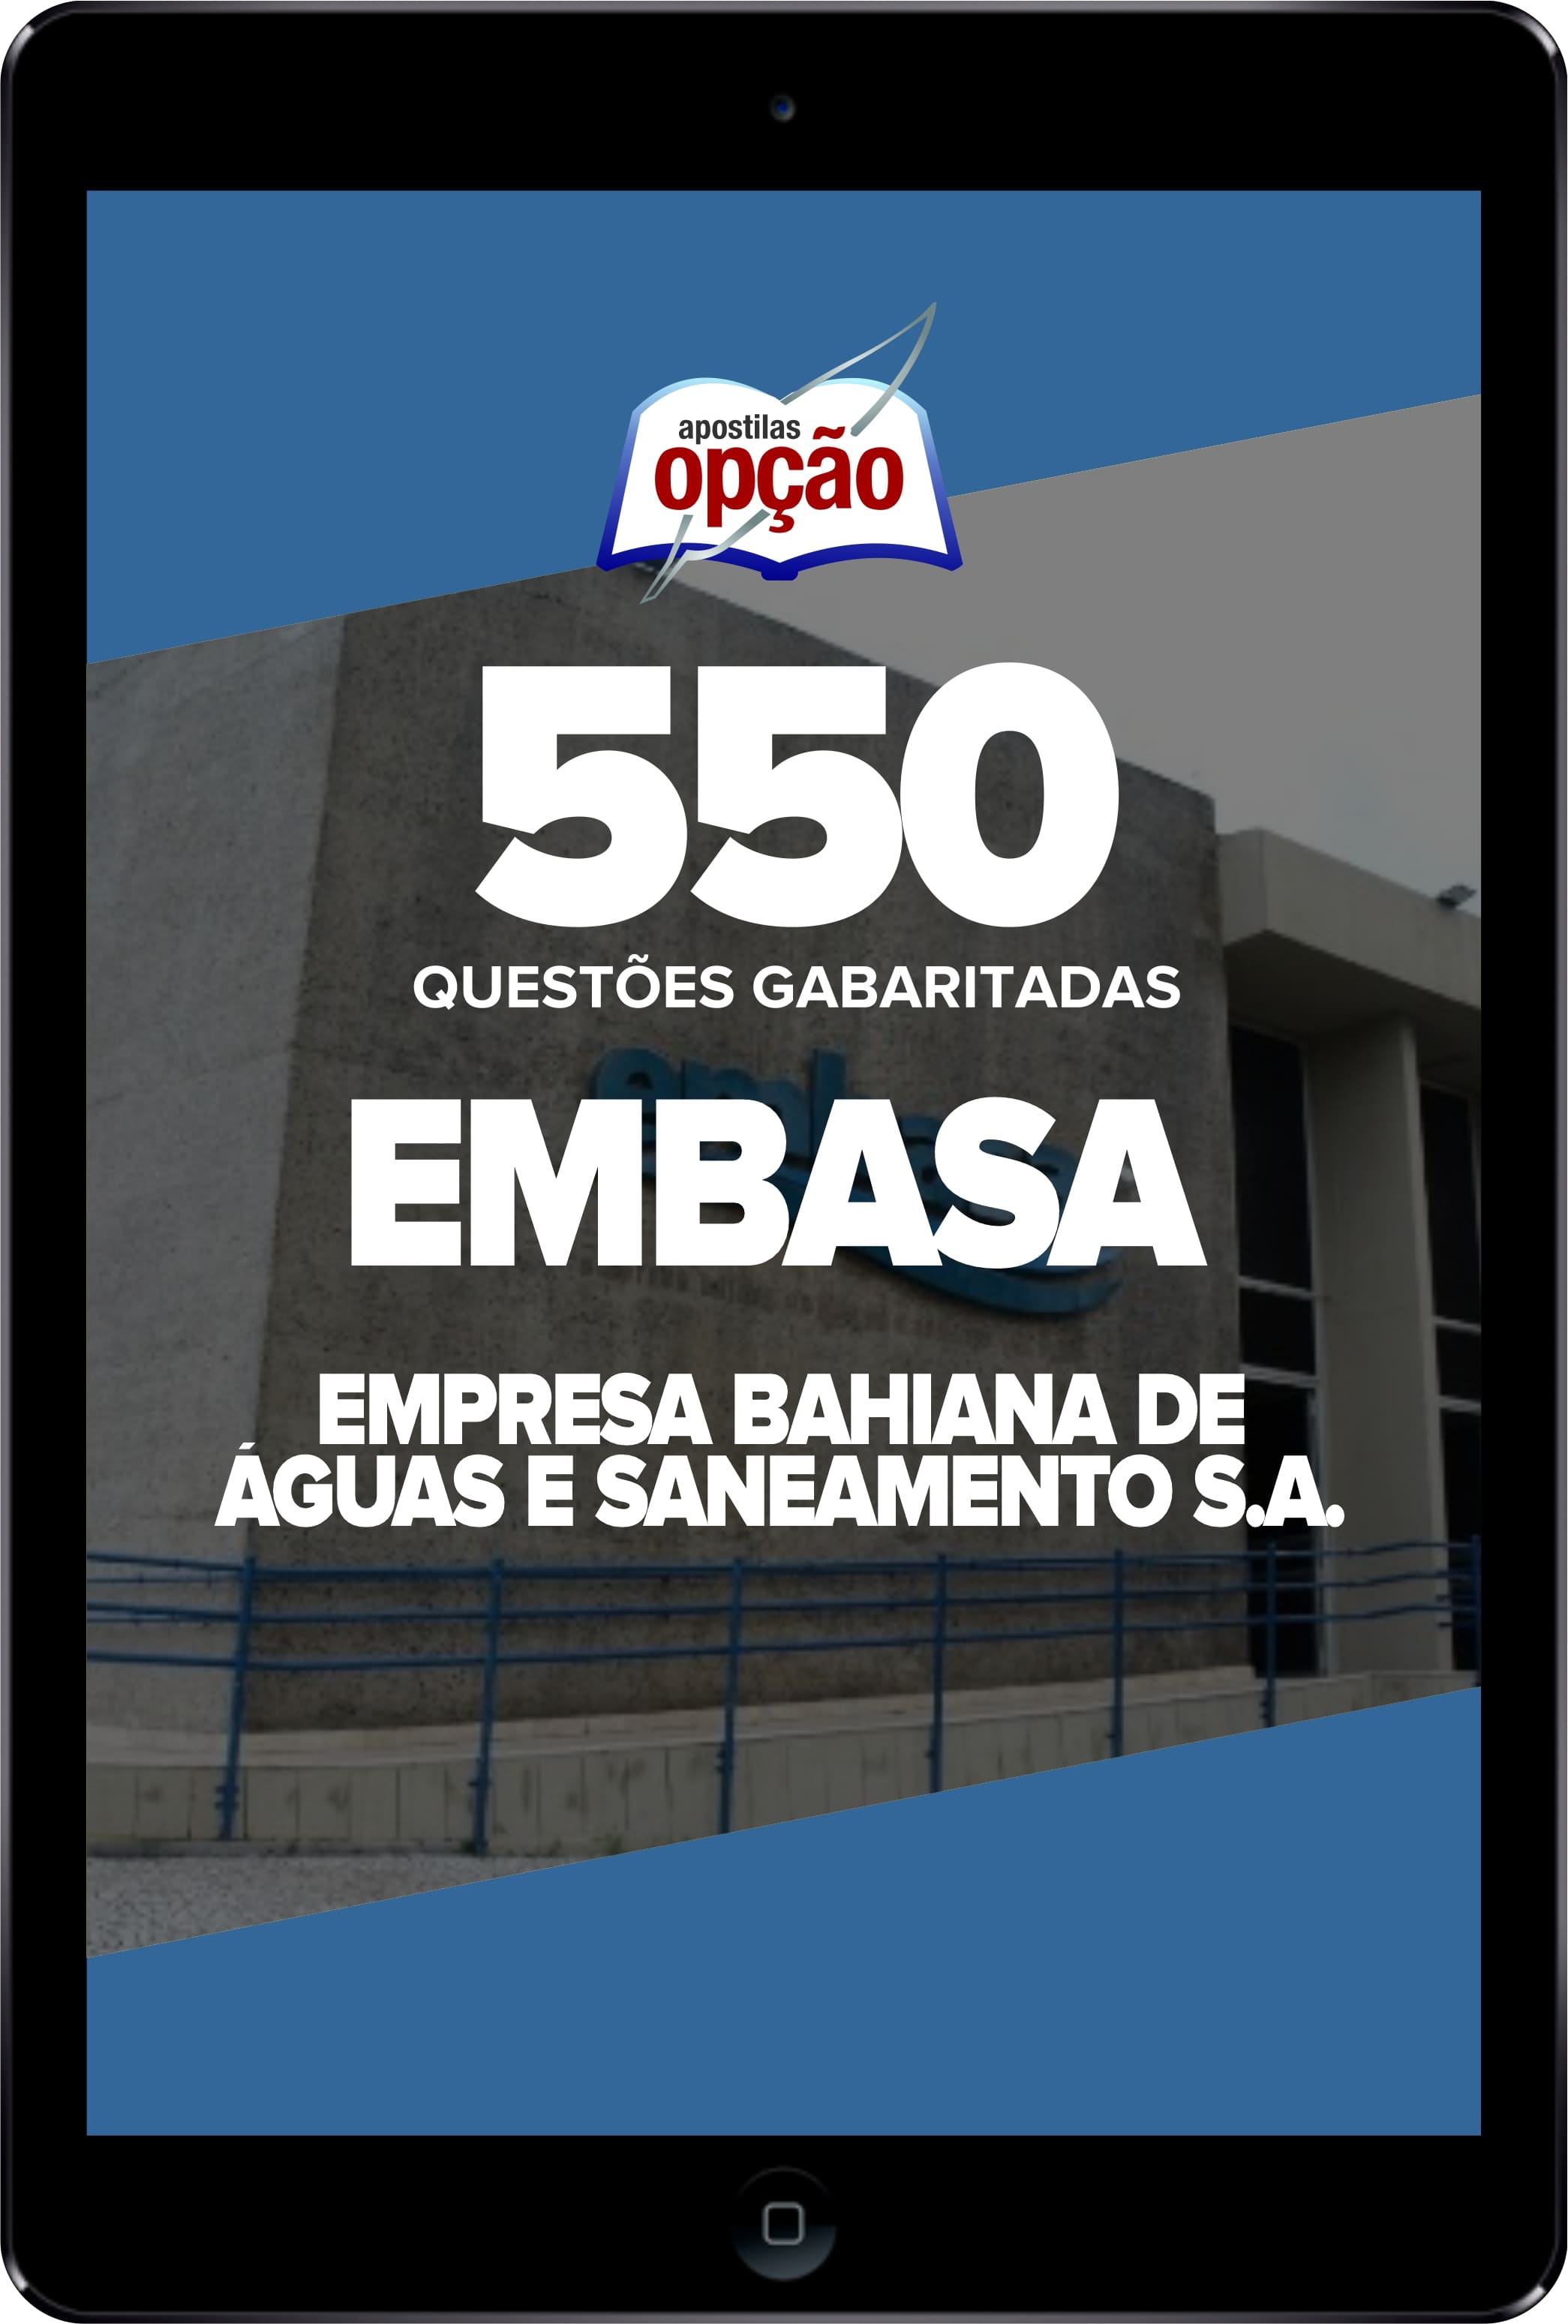 Caderno EMBASA - 550 Questões Gabaritadas em PDF